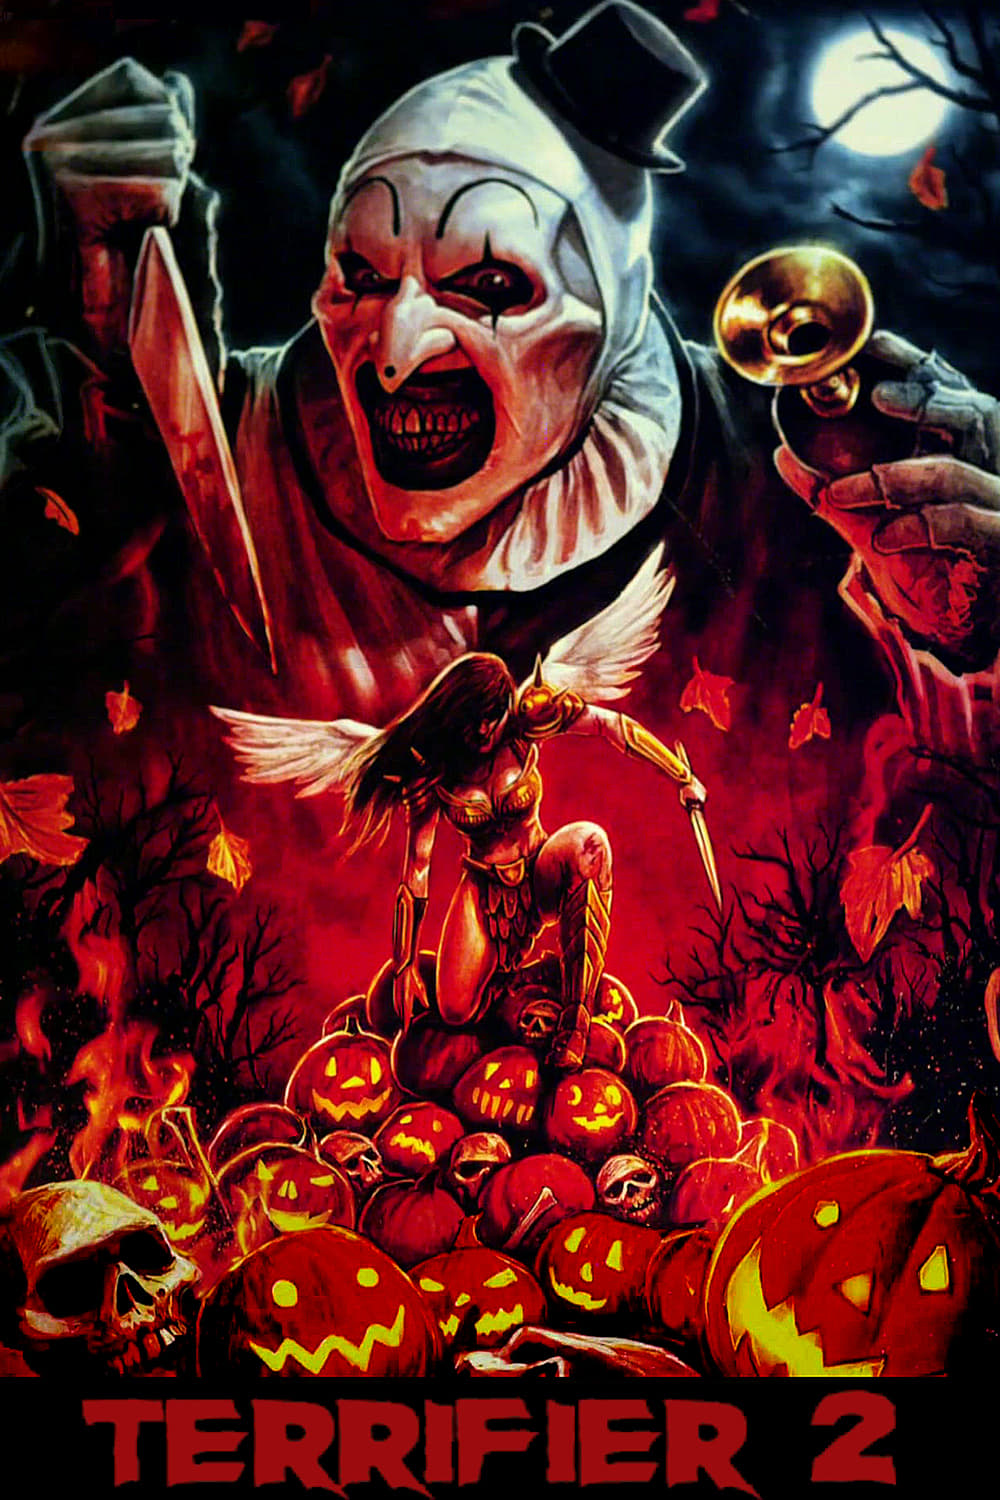 Terrifier 2 Trailer & Poster